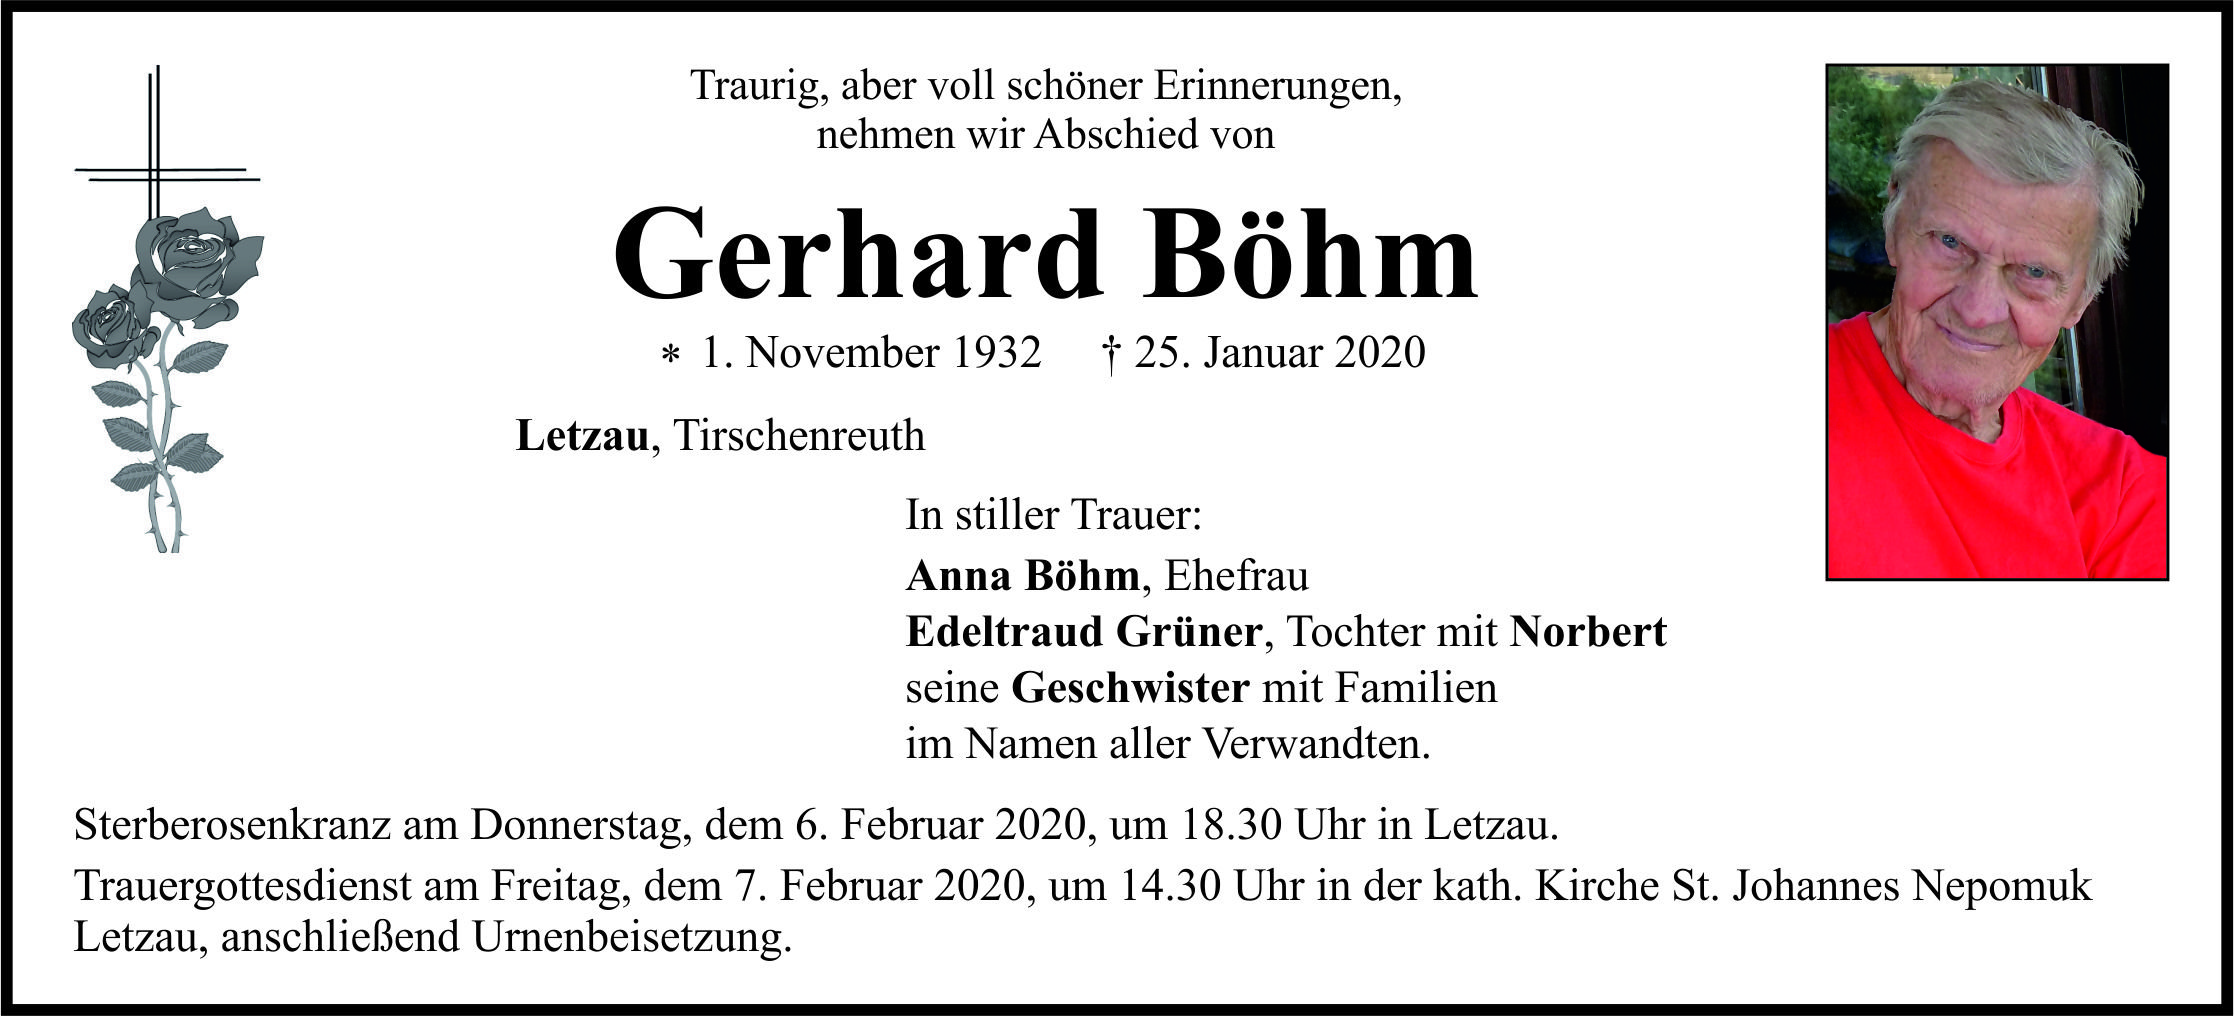 Traueranzeige Gerhard Böhm, Letzau